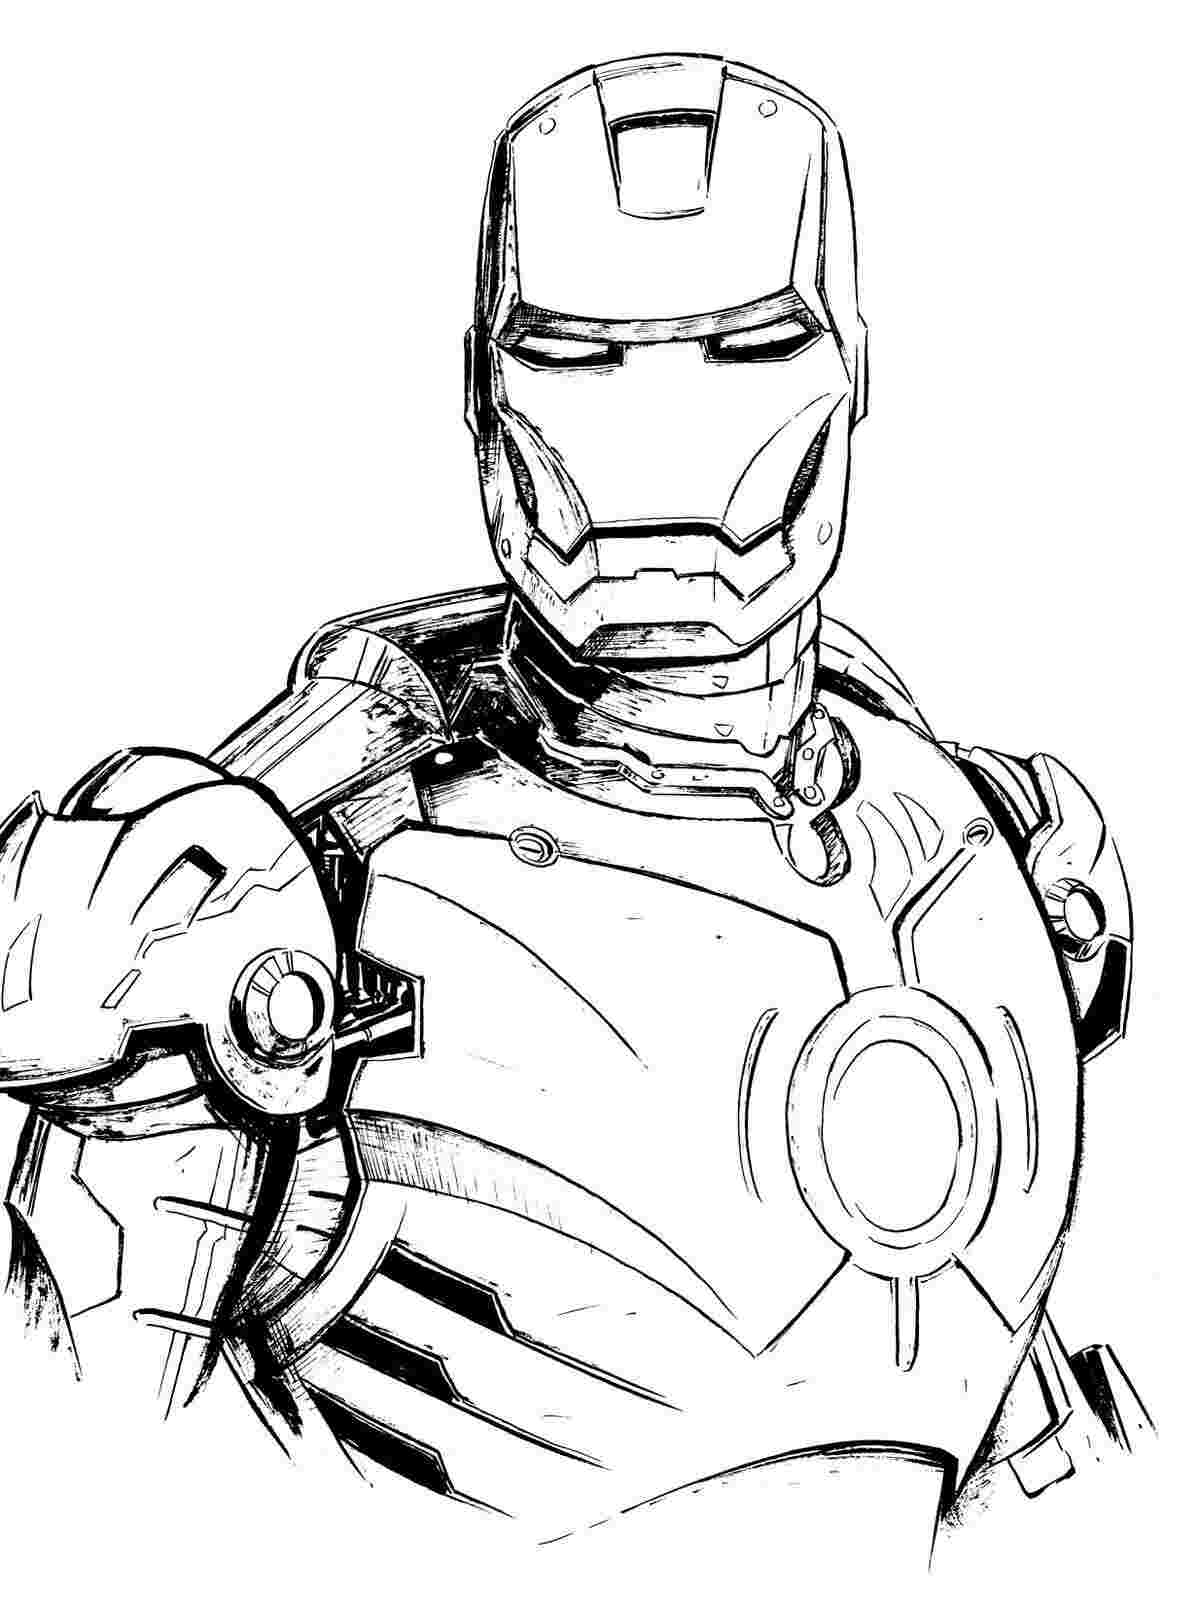 Die Horrible Iron Man-Rüstung hat einen mächtigen Kreis auf der Brust